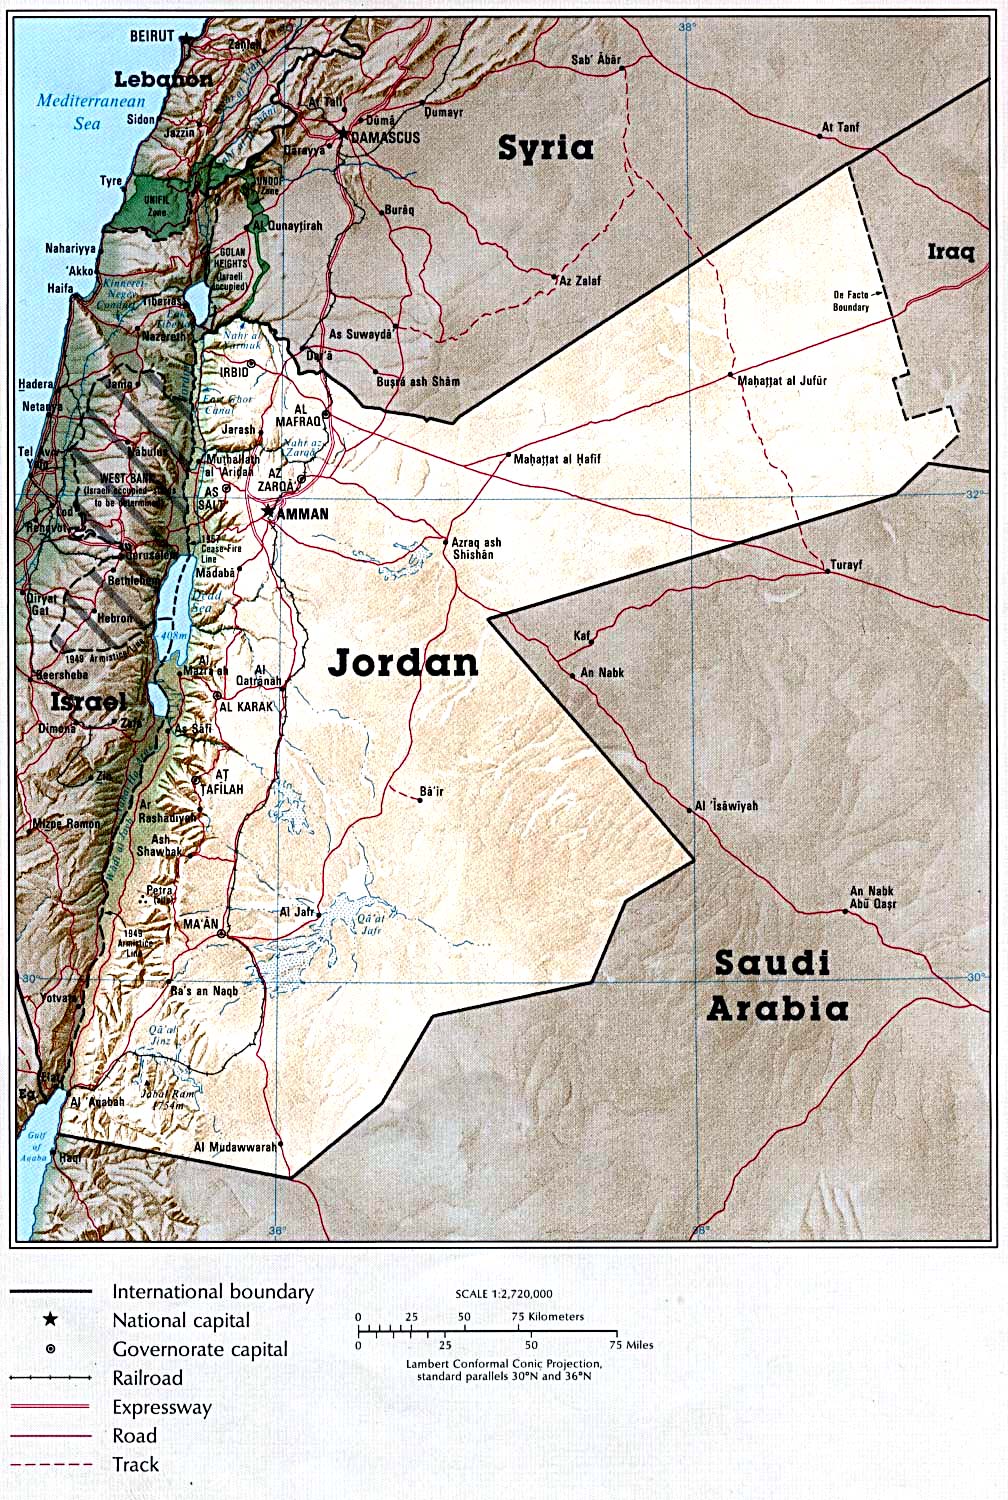 jordan country details